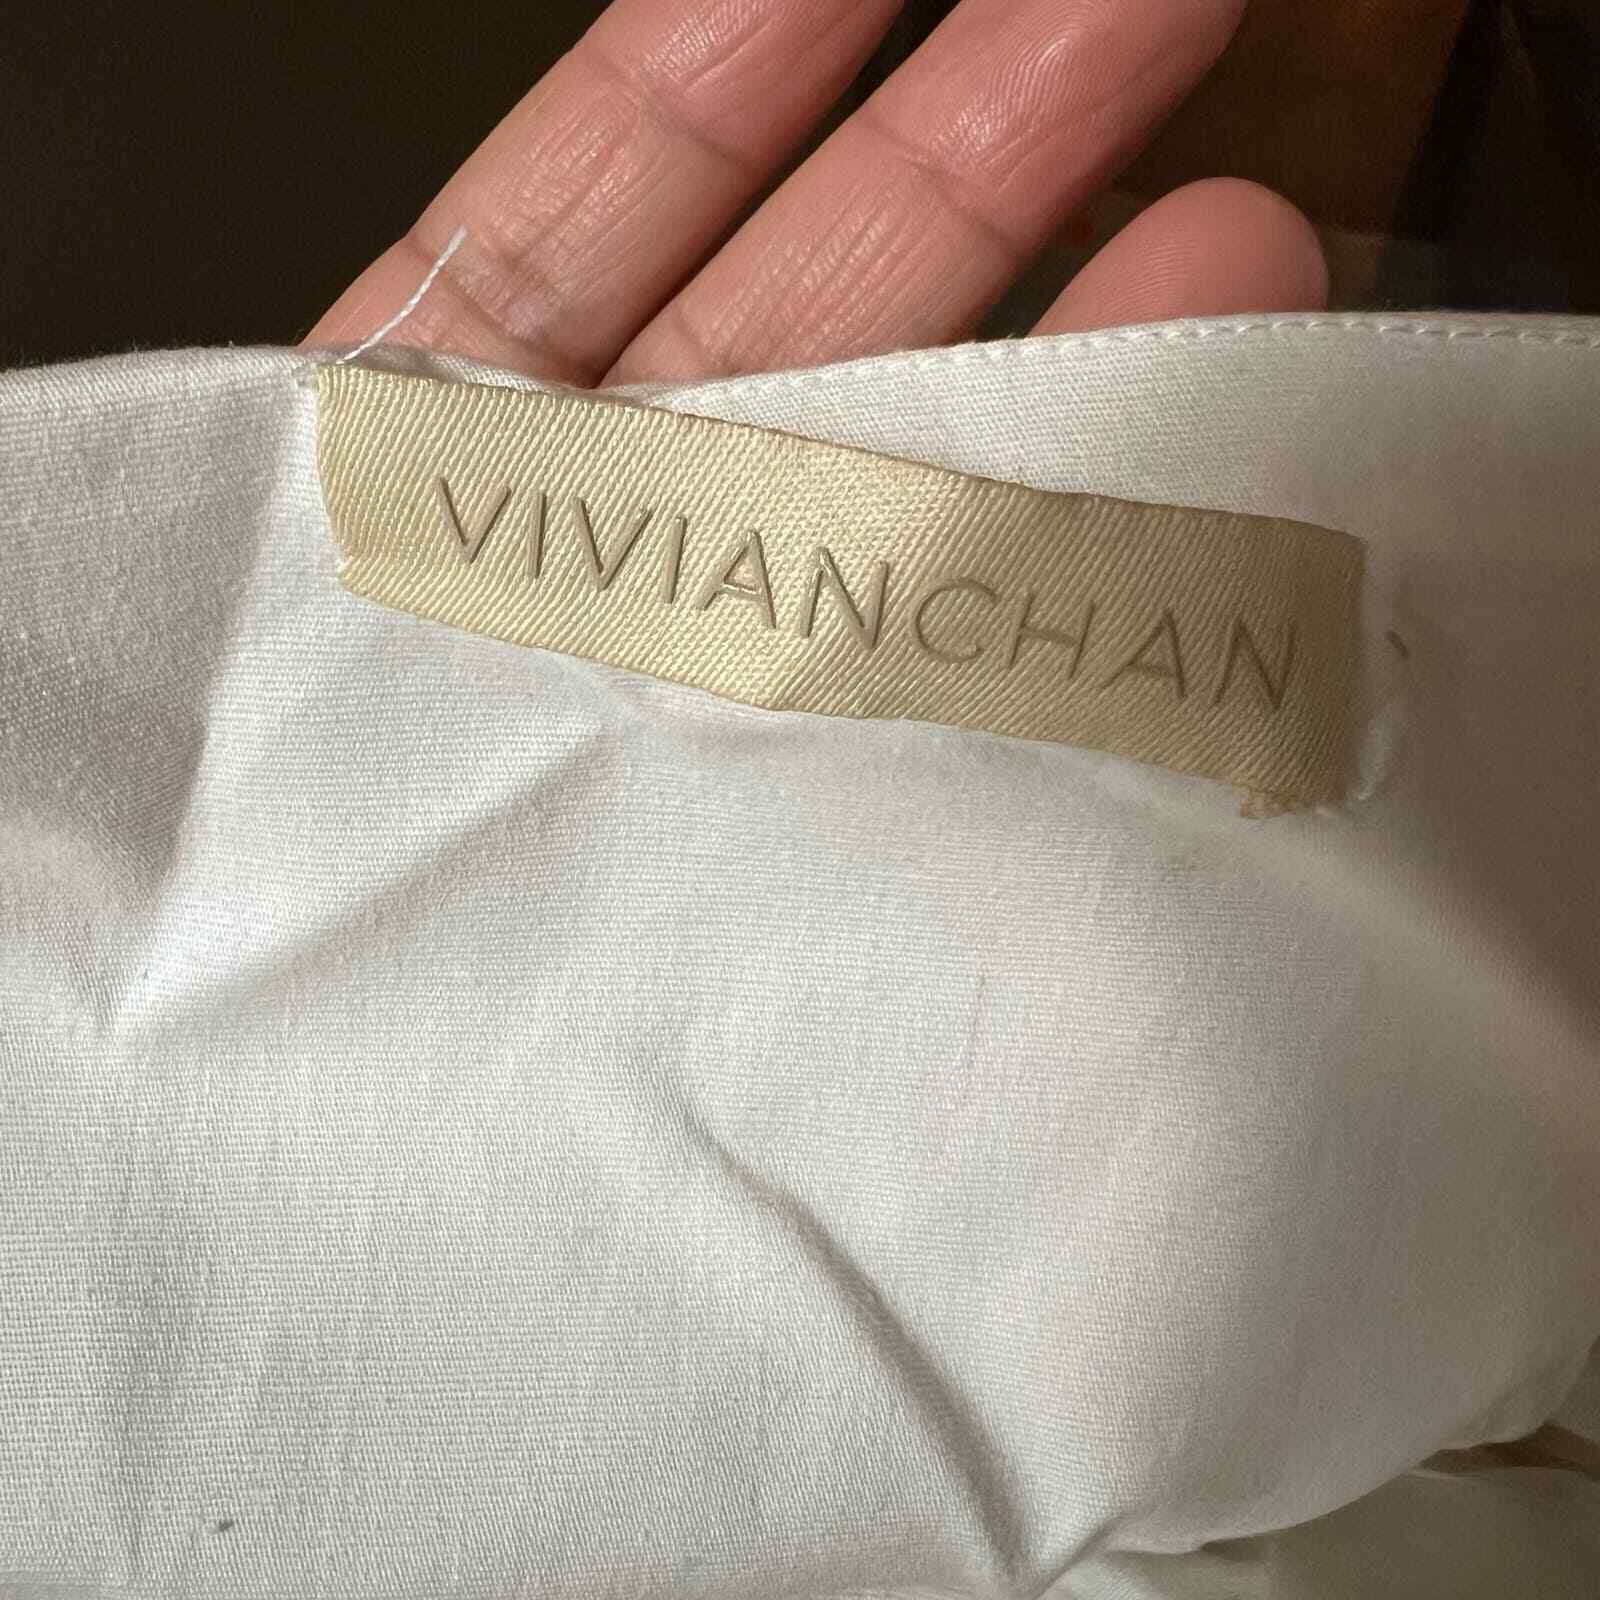 VIVIAN CHAN Nicolette Dress size XS - image 6